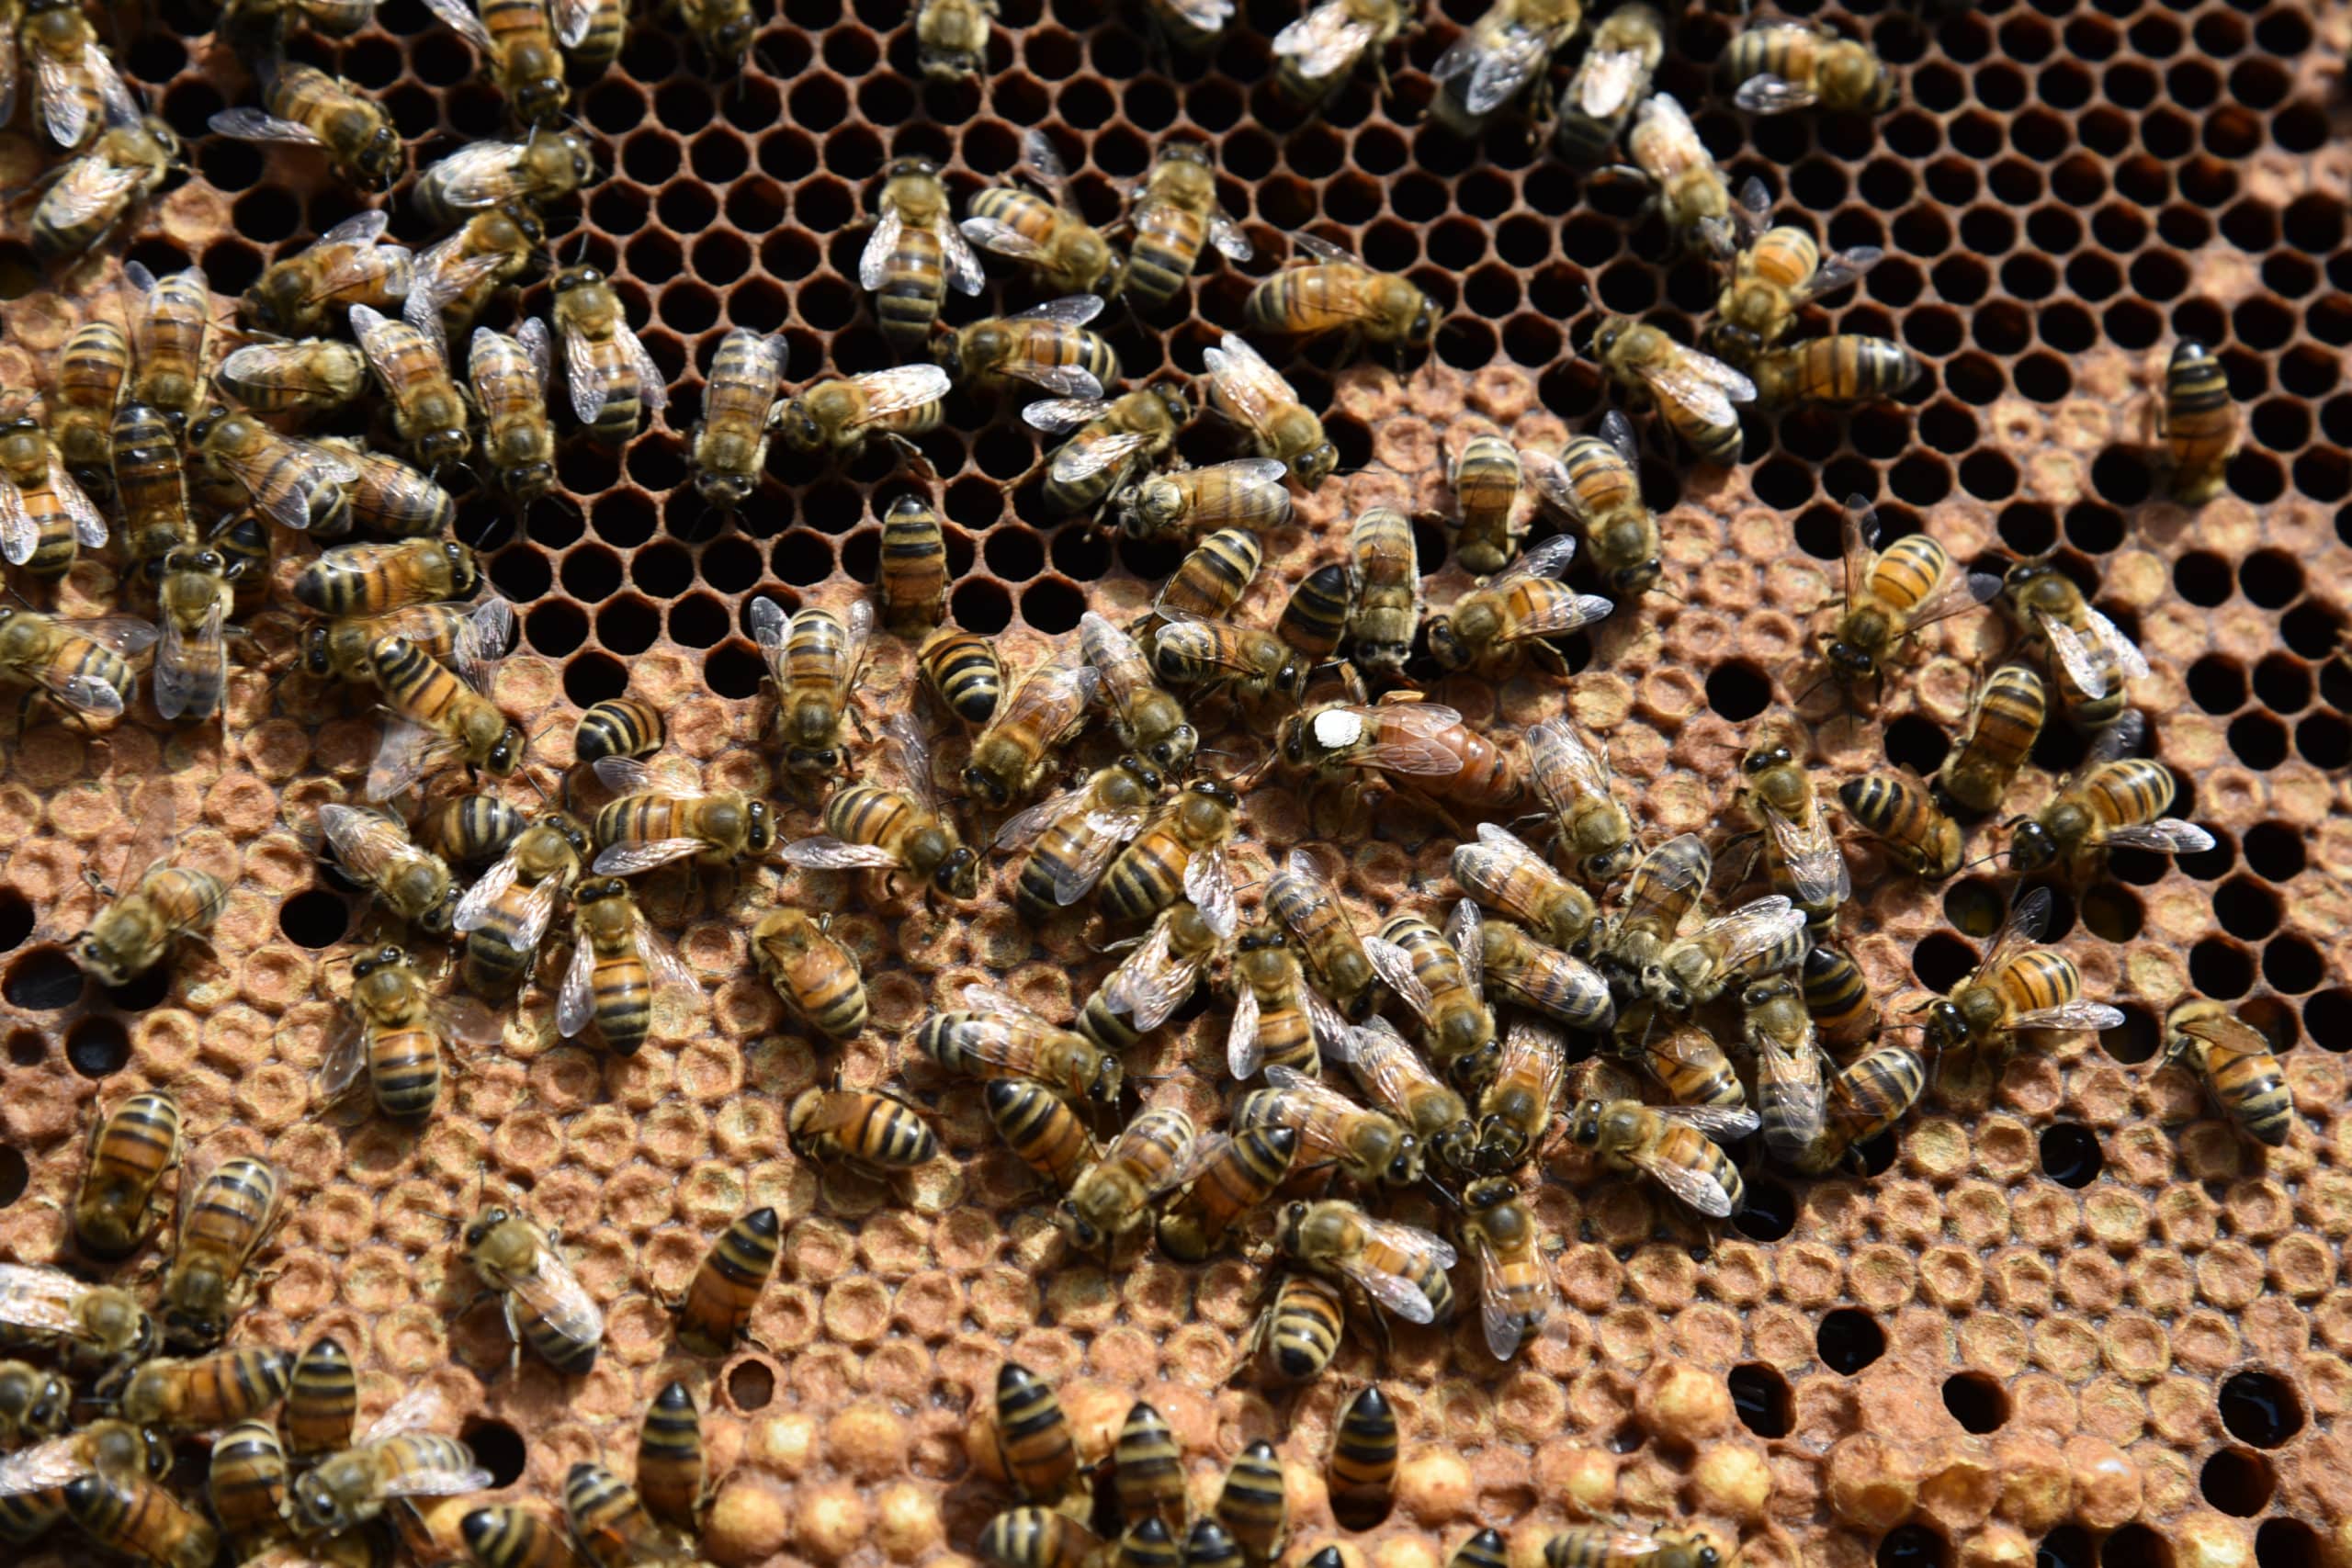 Lire la suite à propos de l’article Production de miel en 2021 : une année noire due à la météo